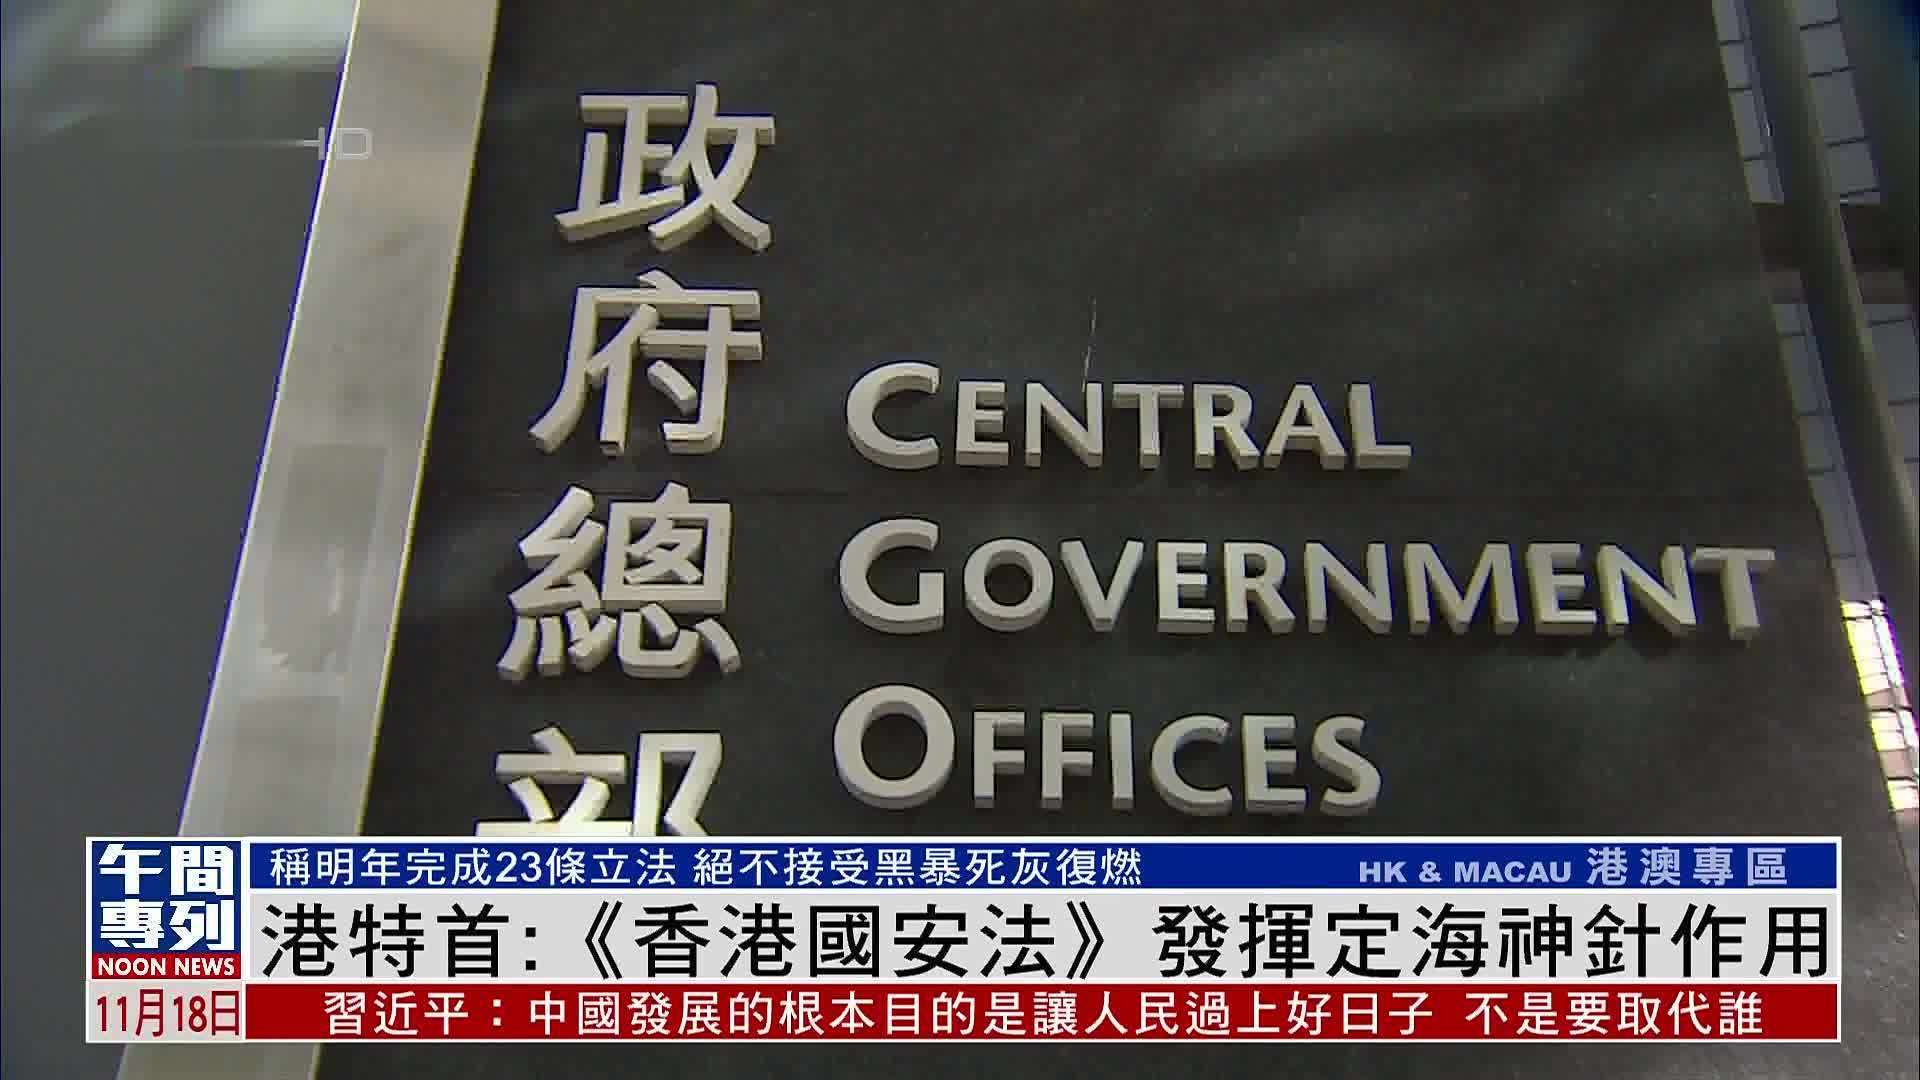 港特首:香港国安法发挥定海神针作用